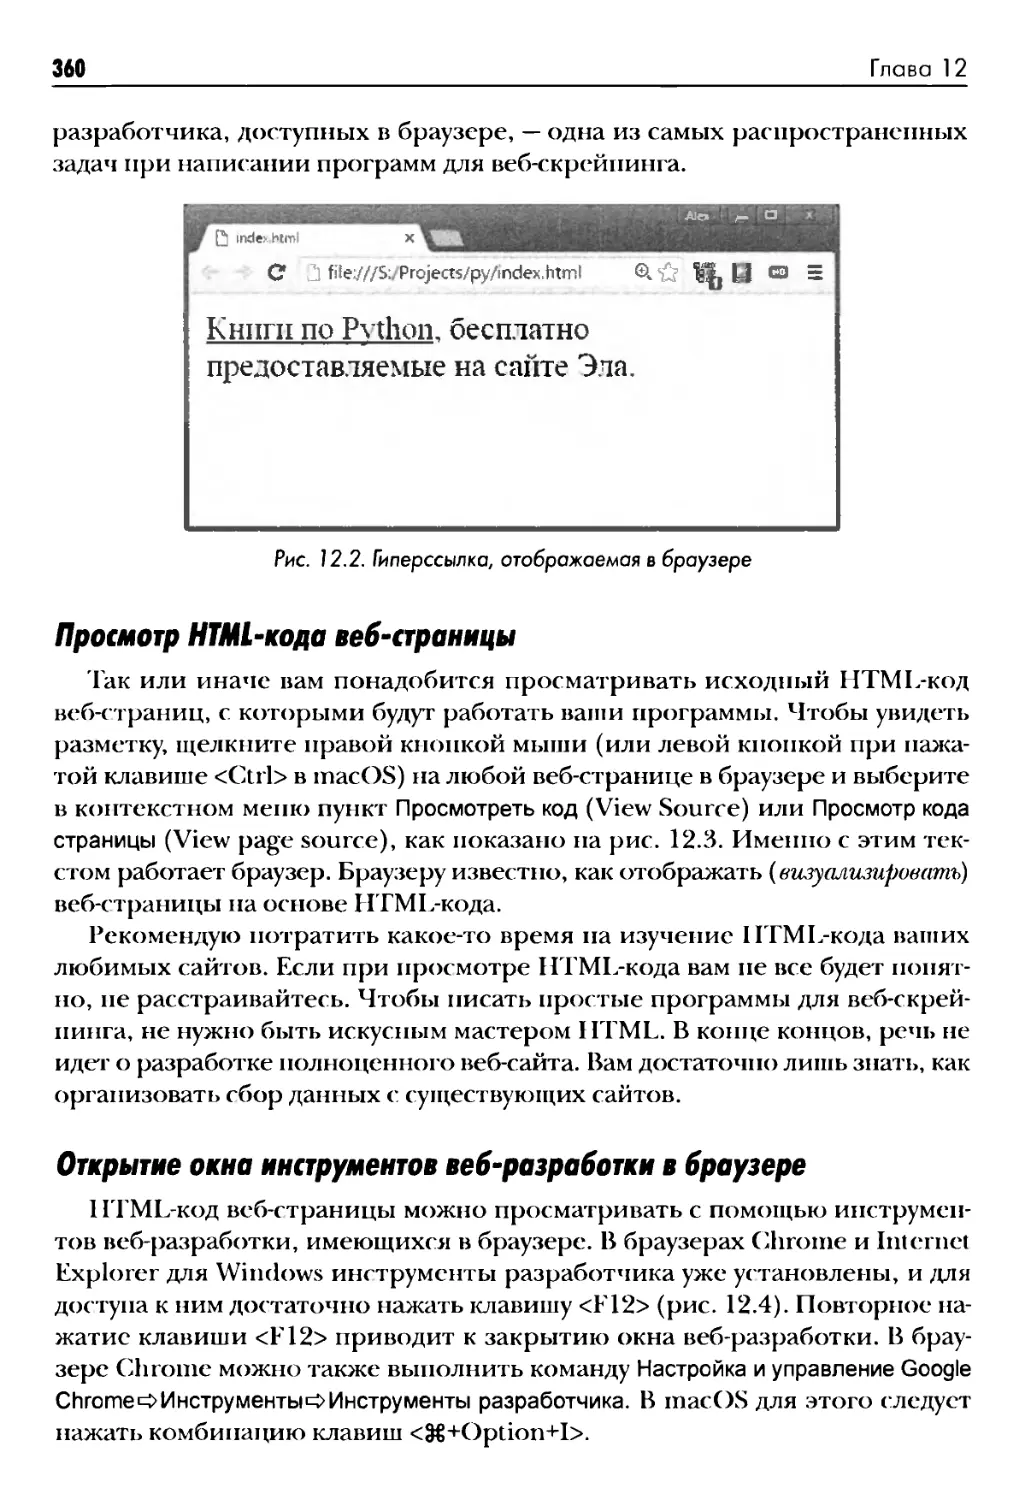 Просмотр HTML-кода веб-страницы
Открытие окна инструментов веб-разработки в браузере